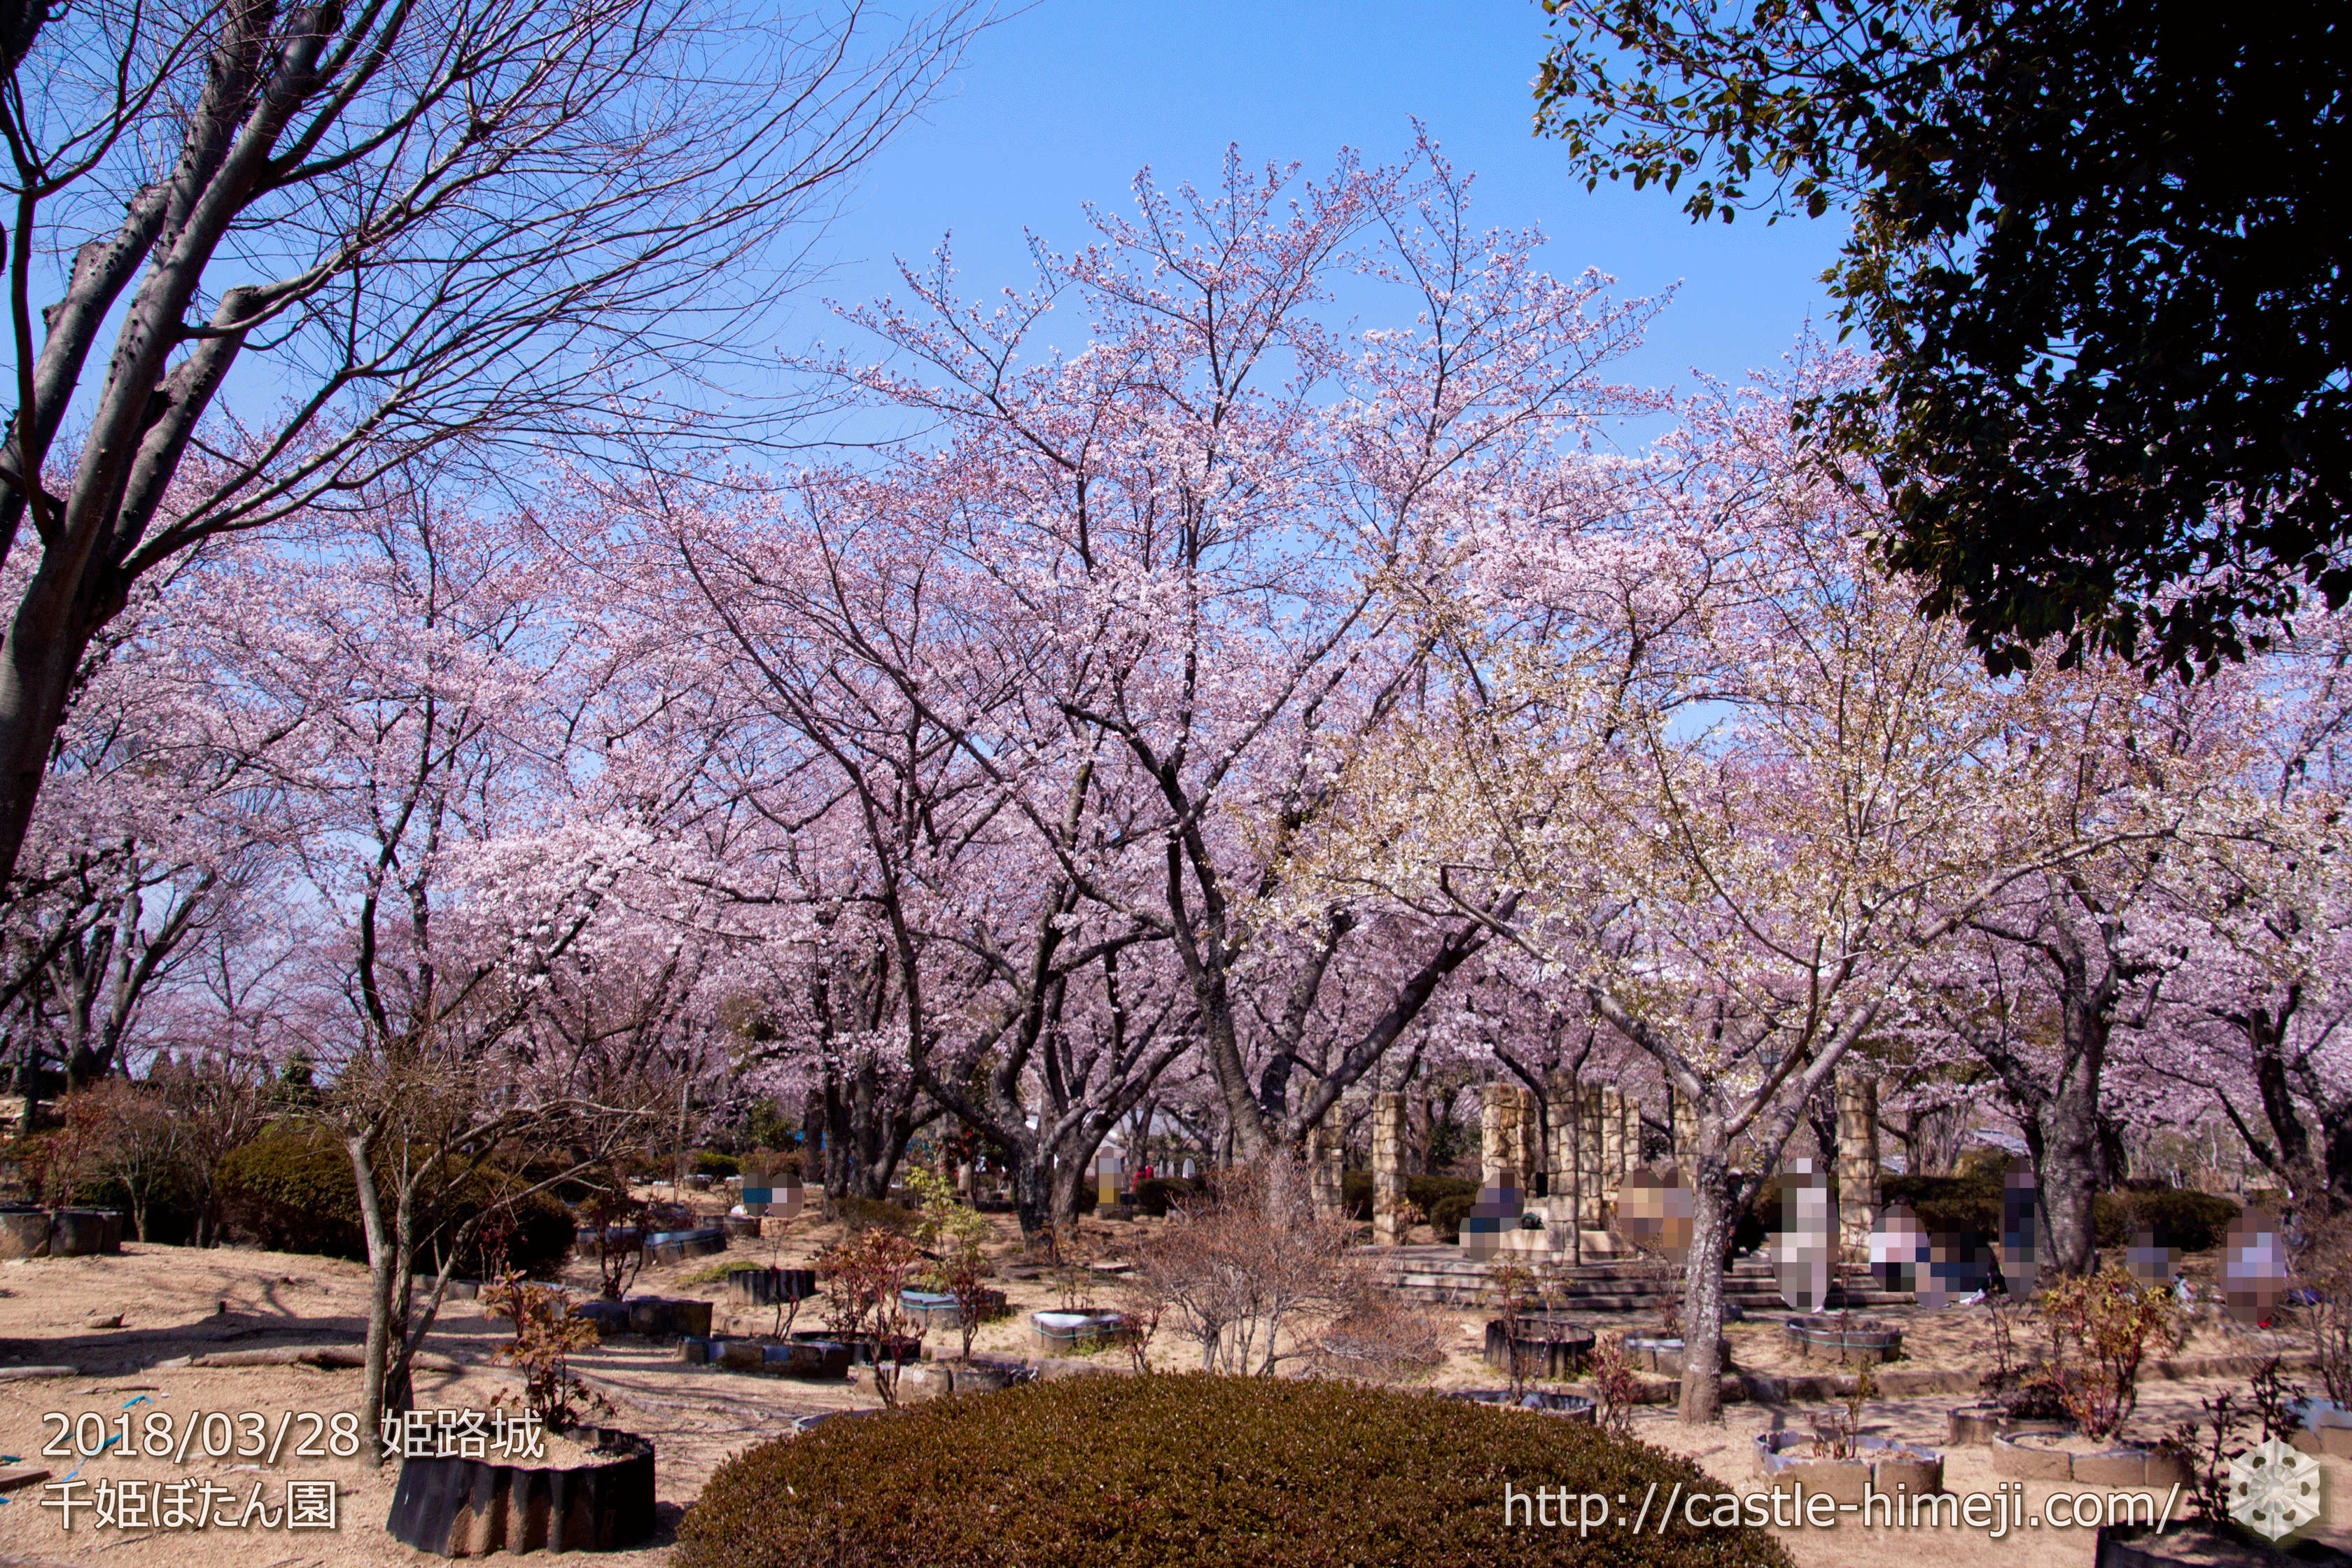 3分 5分咲 姫路市 満開 発表 18 3 28の姫路城の桜速報 開花状況 桜によって5分咲きも 姫路城観光おすすめ 見どころ案内